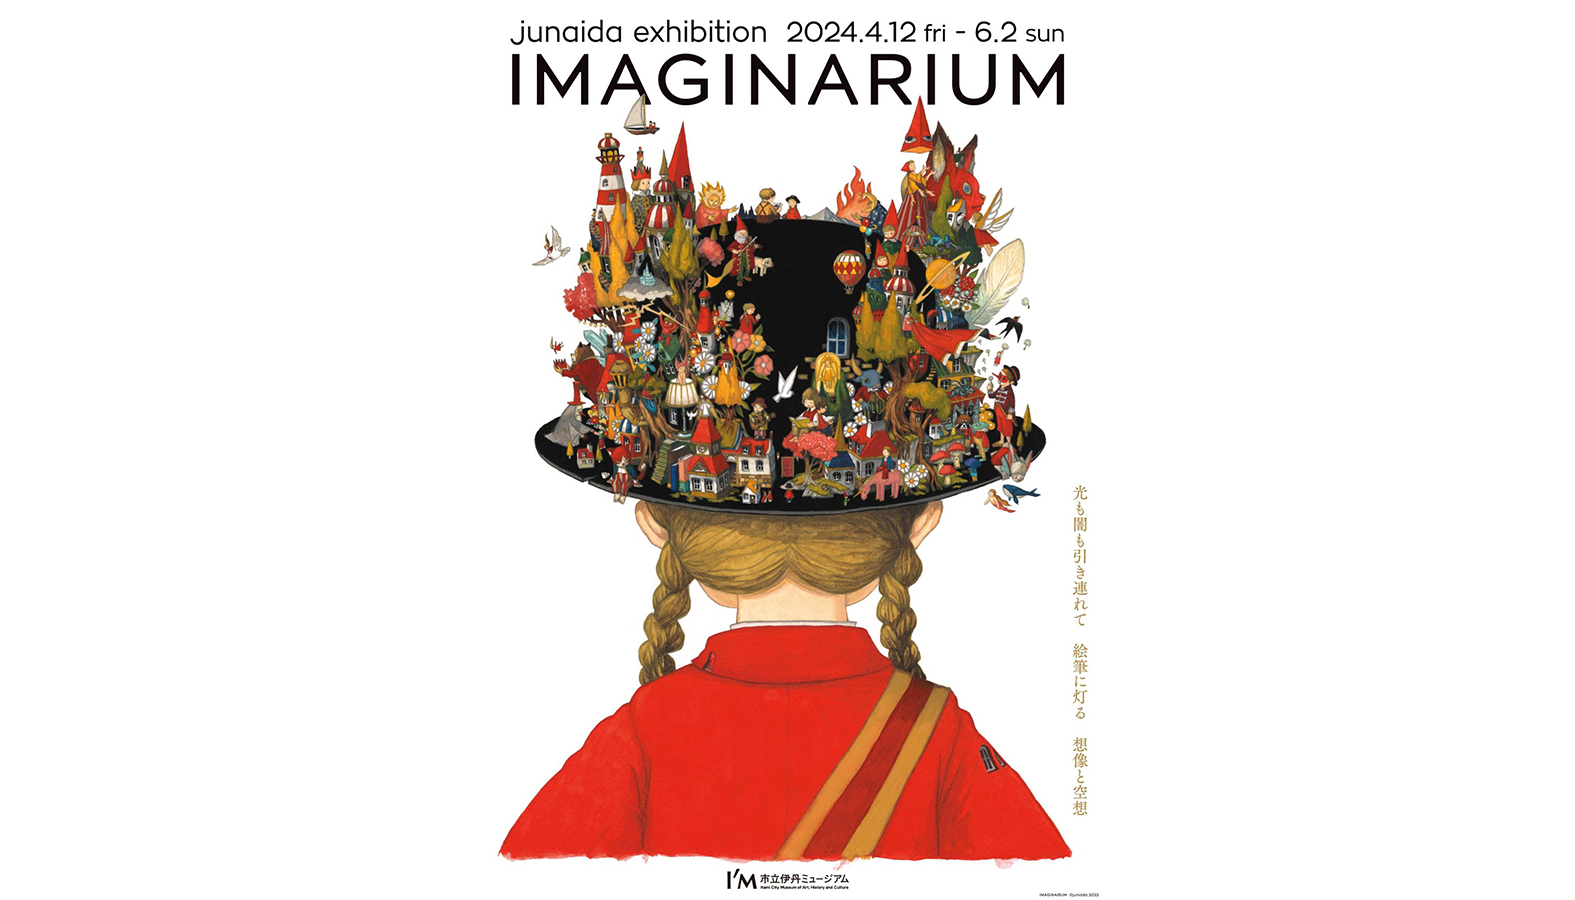 絵本『Michi』『の』『怪物園』のjunaida による巡回展「IMAGINARIUM」が市立伊丹ミュージアムにて4月12日から開催